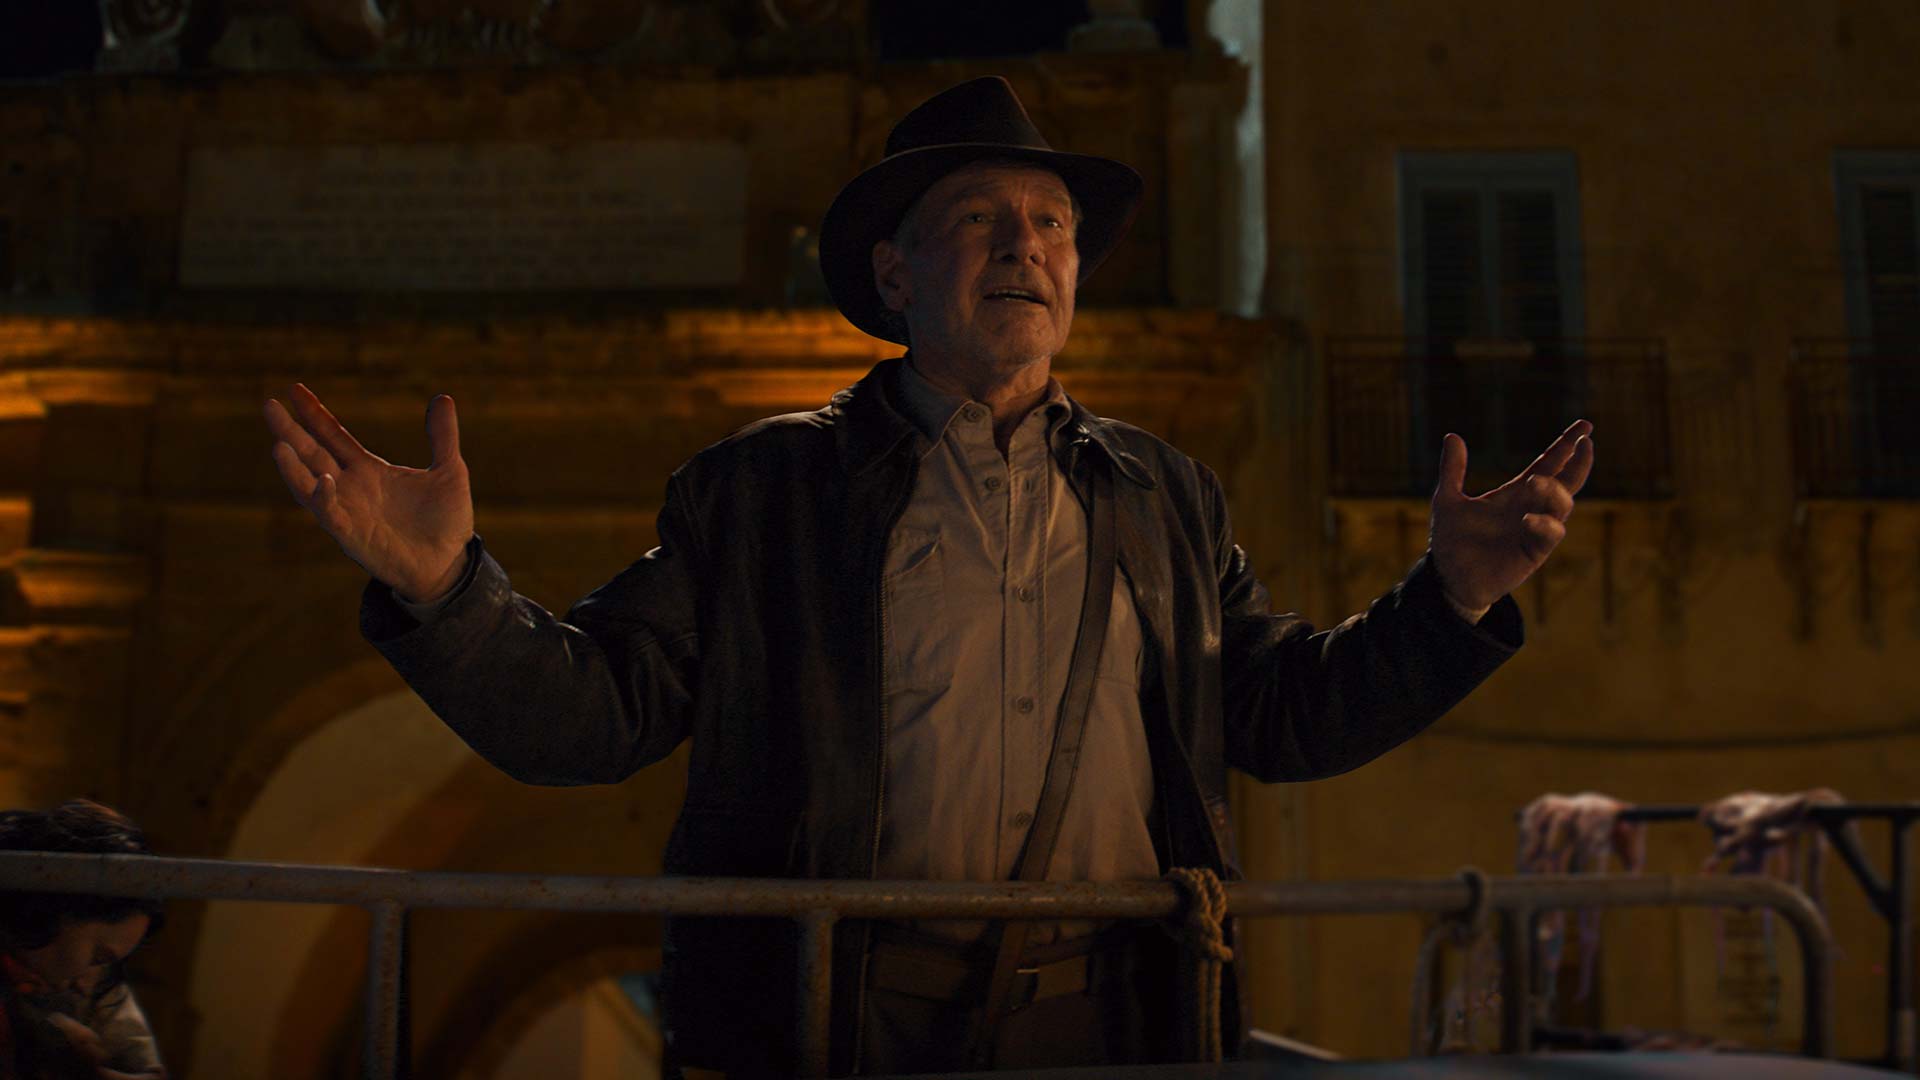 Indiana Jones y el Dial del Destino, fecha de estreno en Disney+ revelada